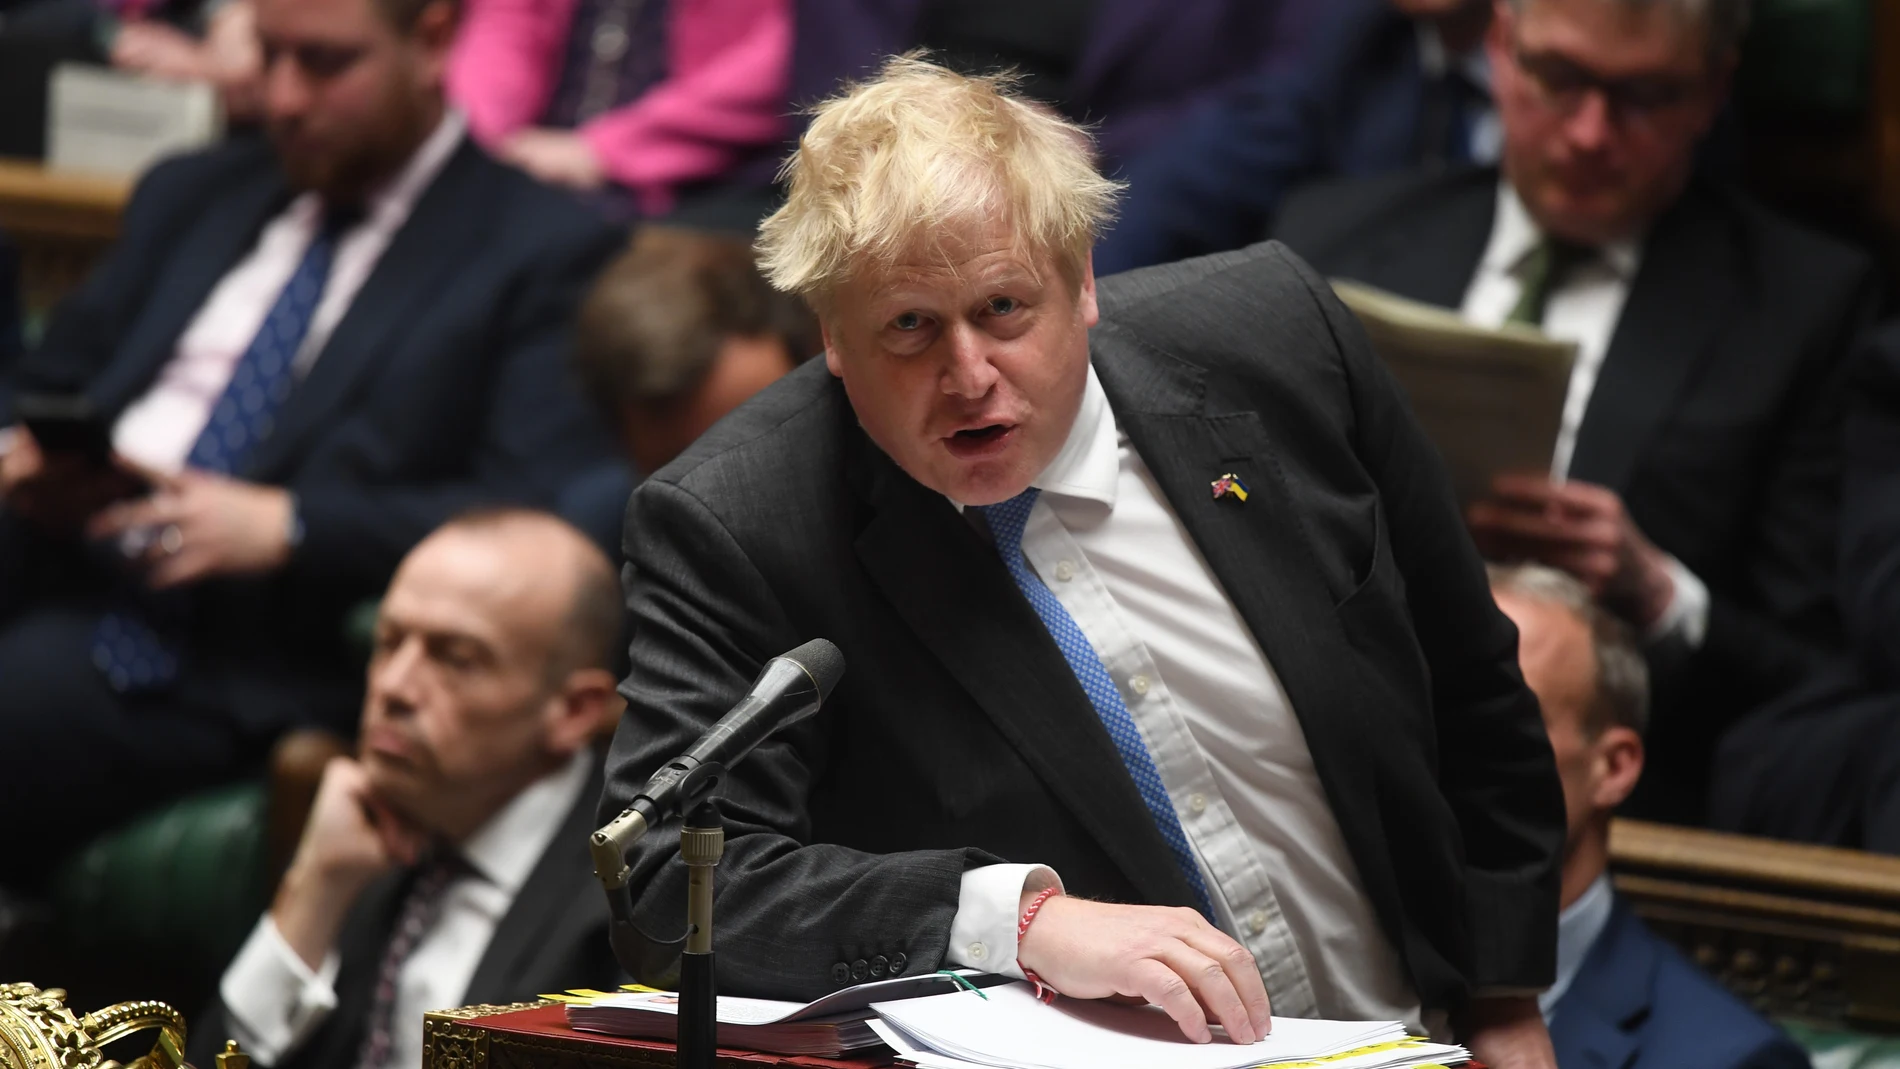 El "premier" Boris Johnson tuvo que condenar ante los Comunes los actos sexistas